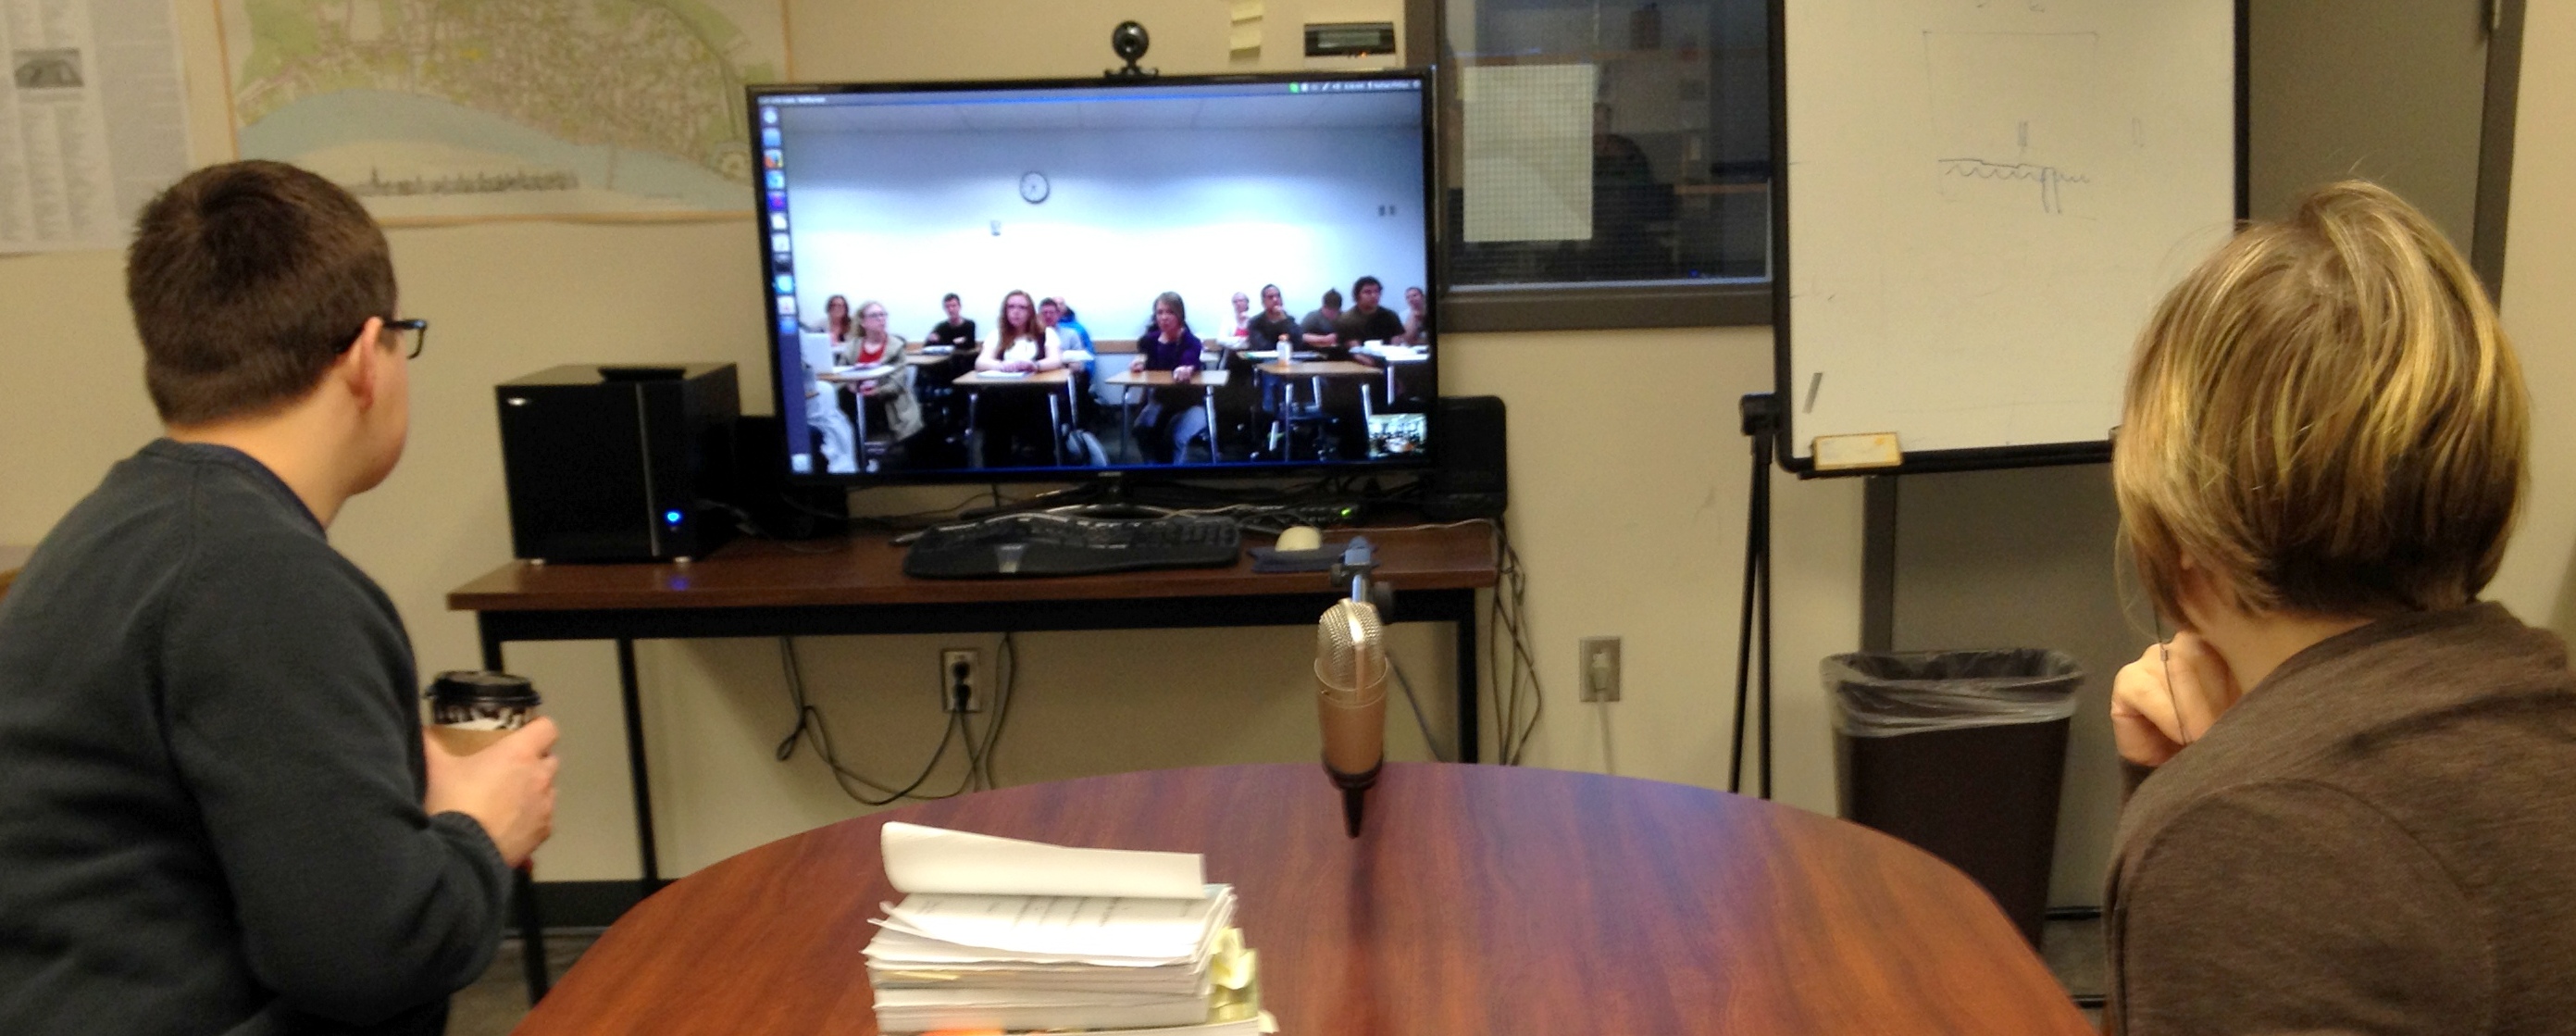 MoEML team members meet Kate McPherson’s UVU class via Skype